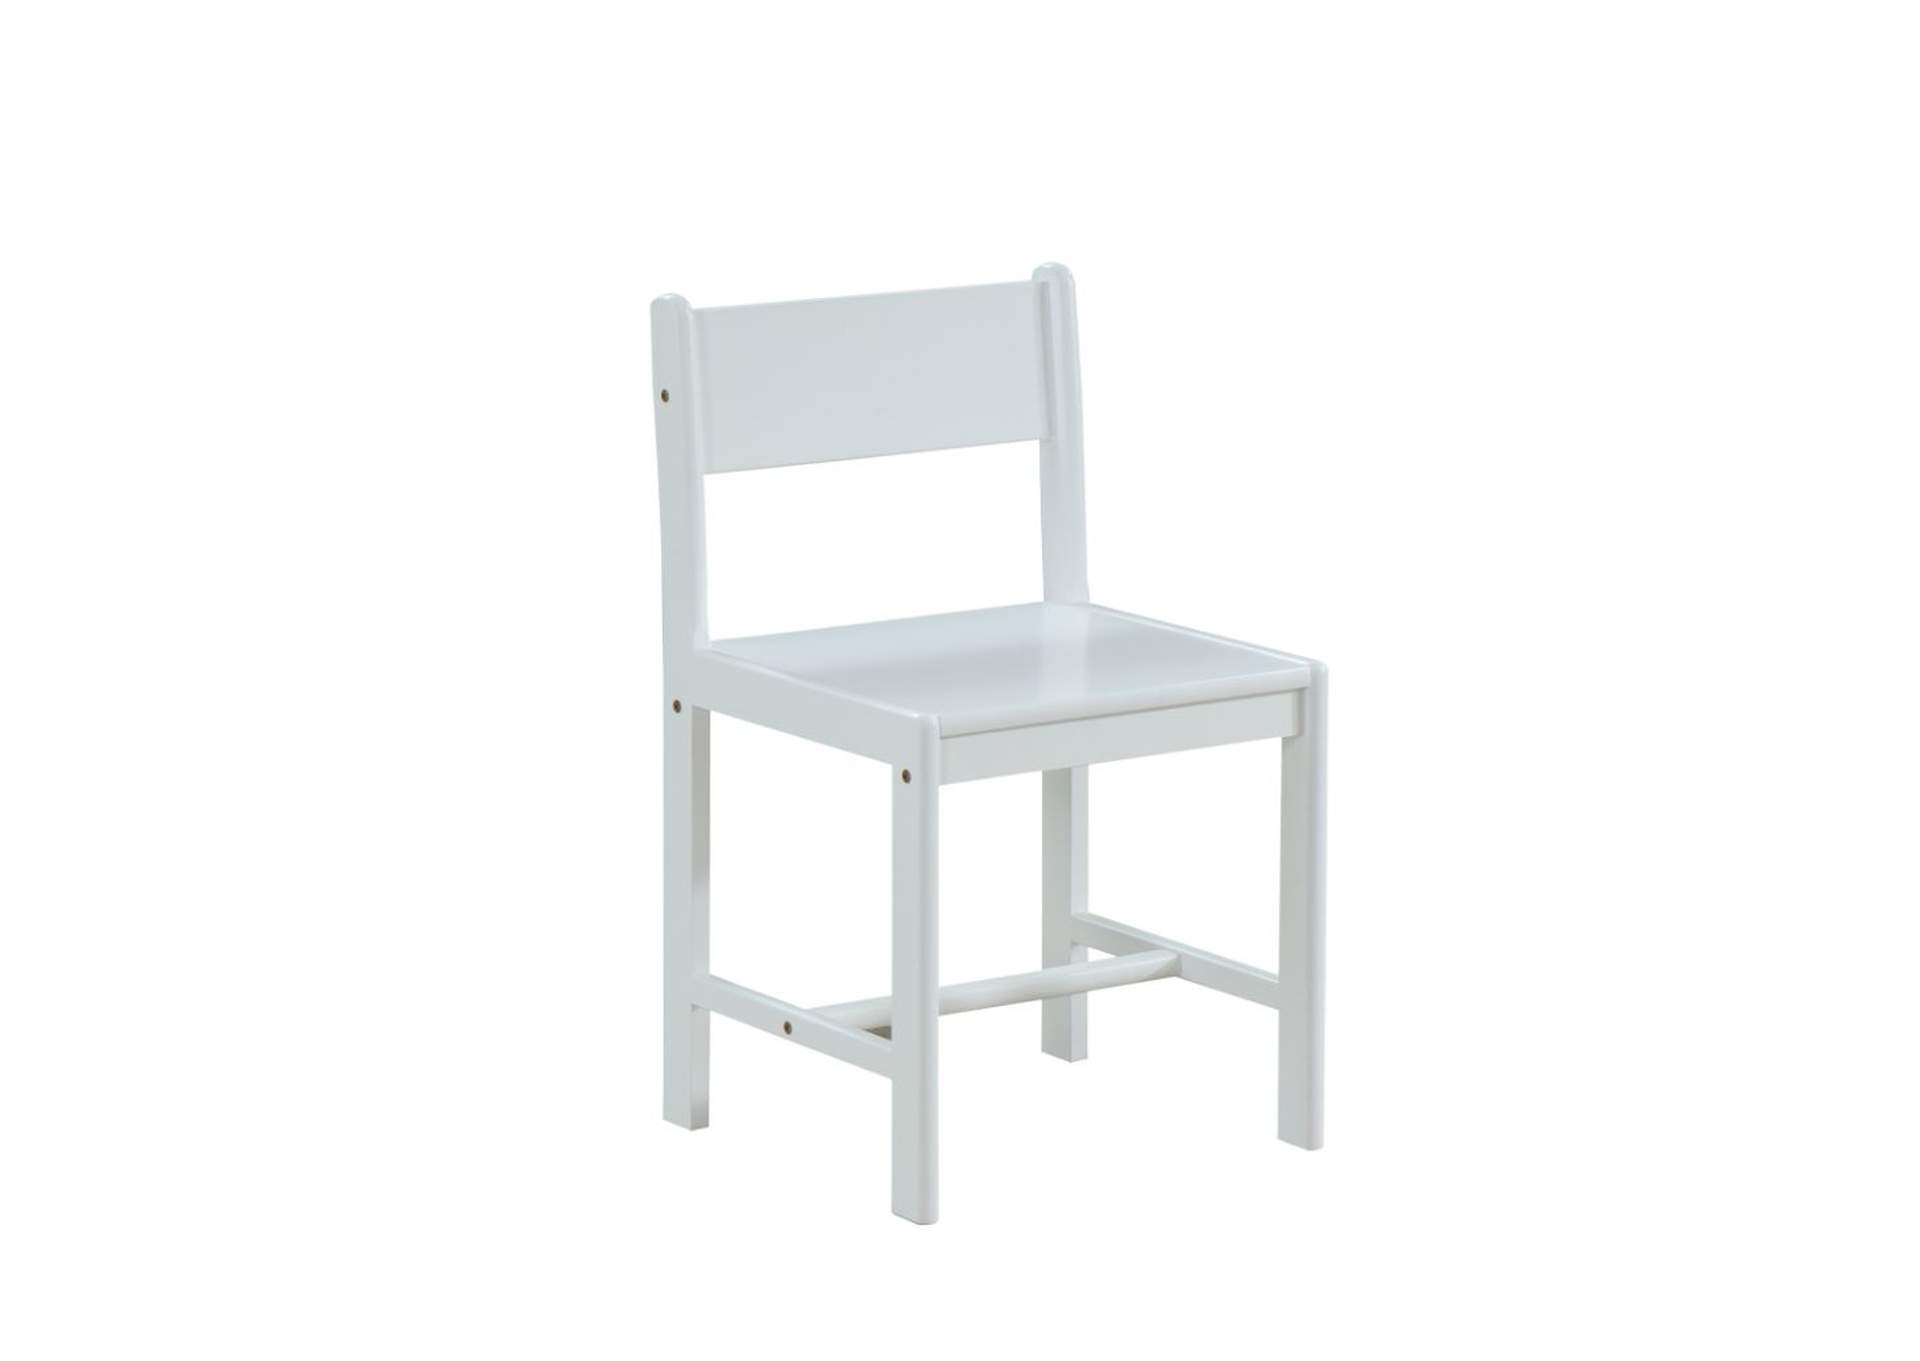 Ragna White Chair,Acme